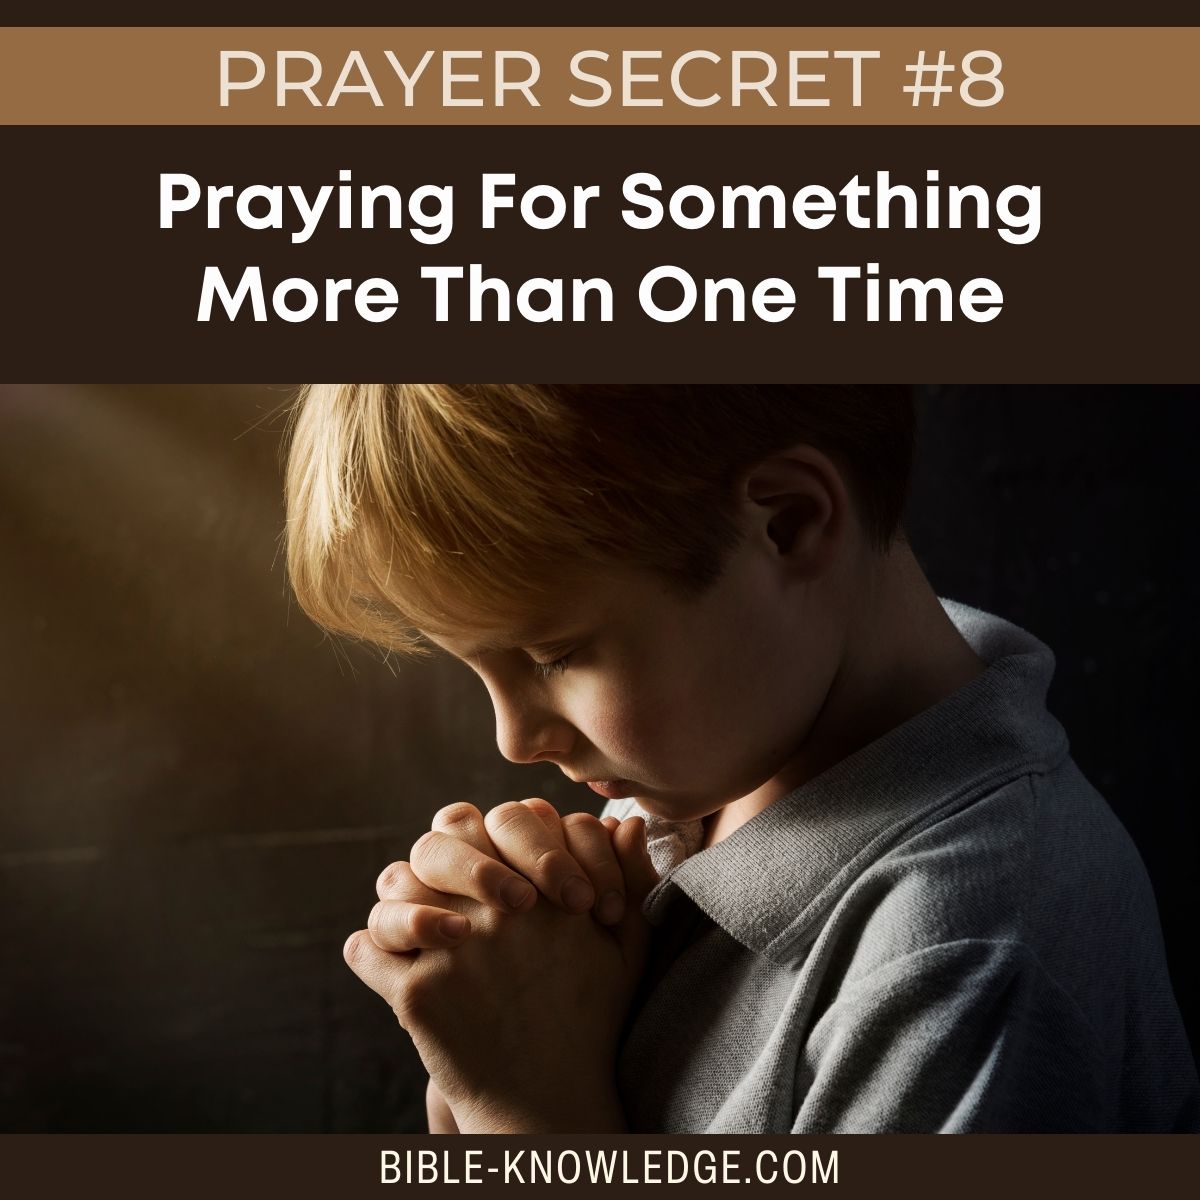 Prayer Secret #8 - Praying For Something More Than One Time